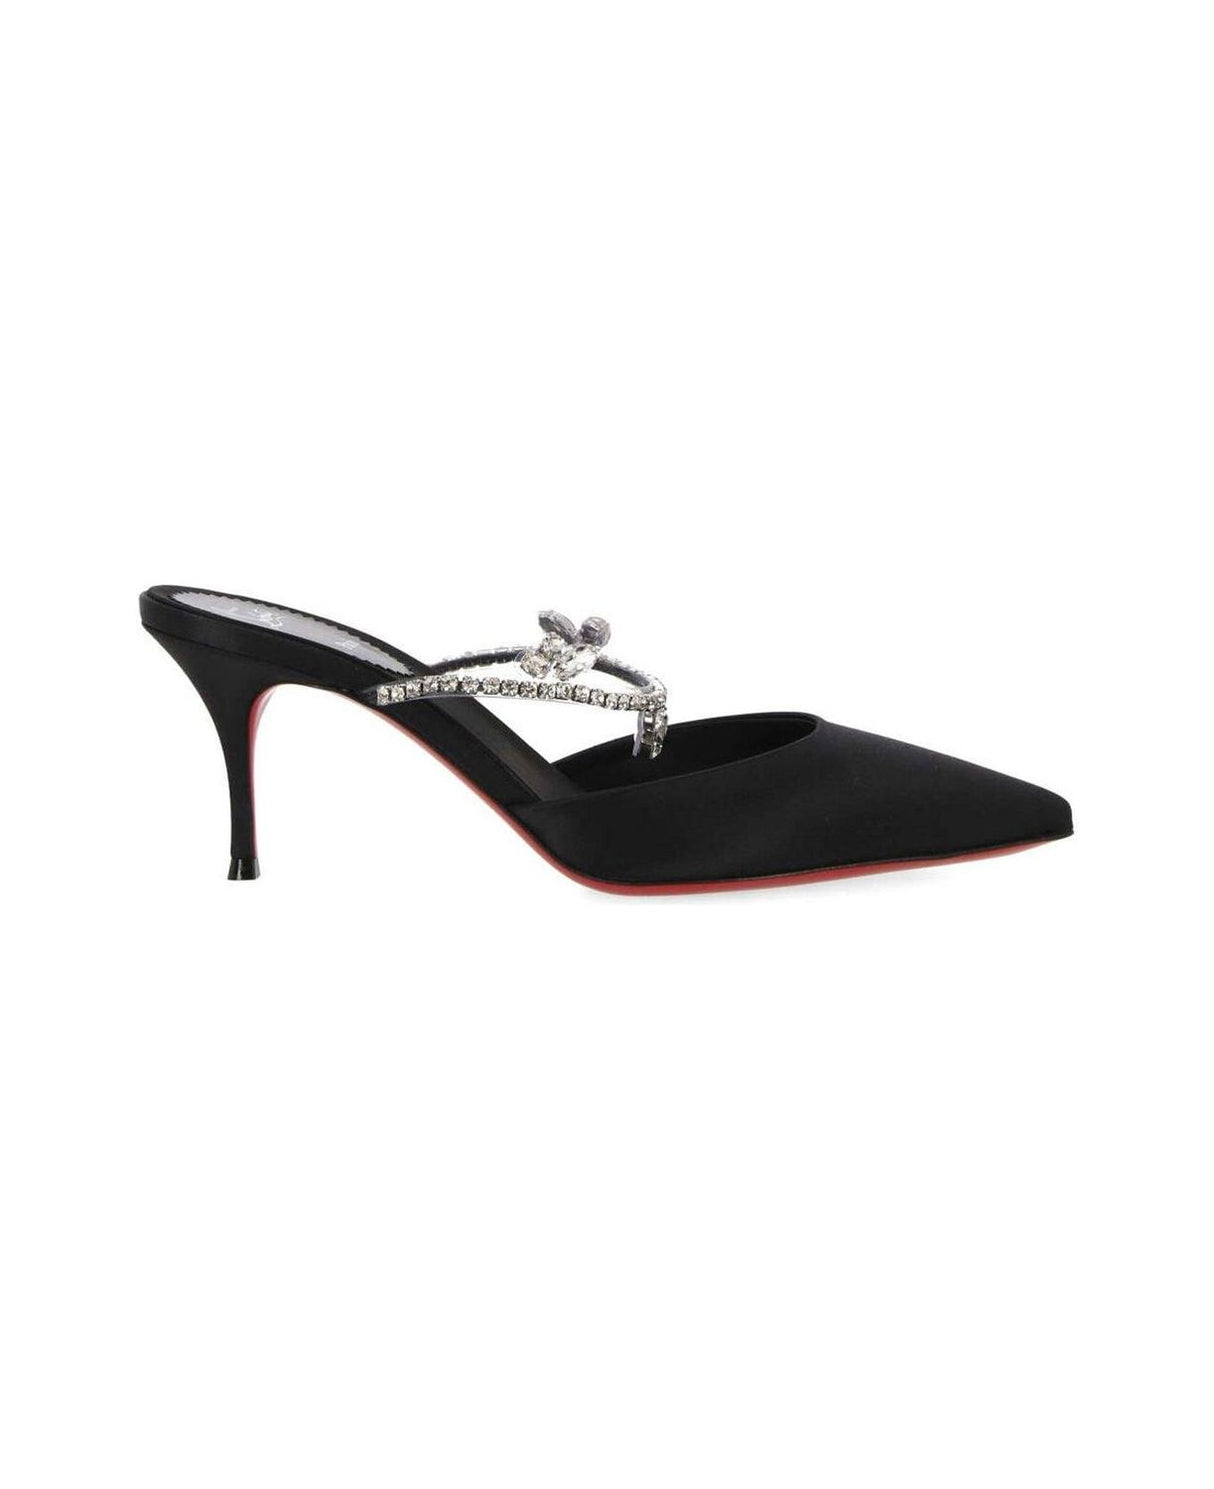 أنيقة ساتان سوداء مزينة بالكريستال حذاء بكعب متوسط ومقدمة مدببة